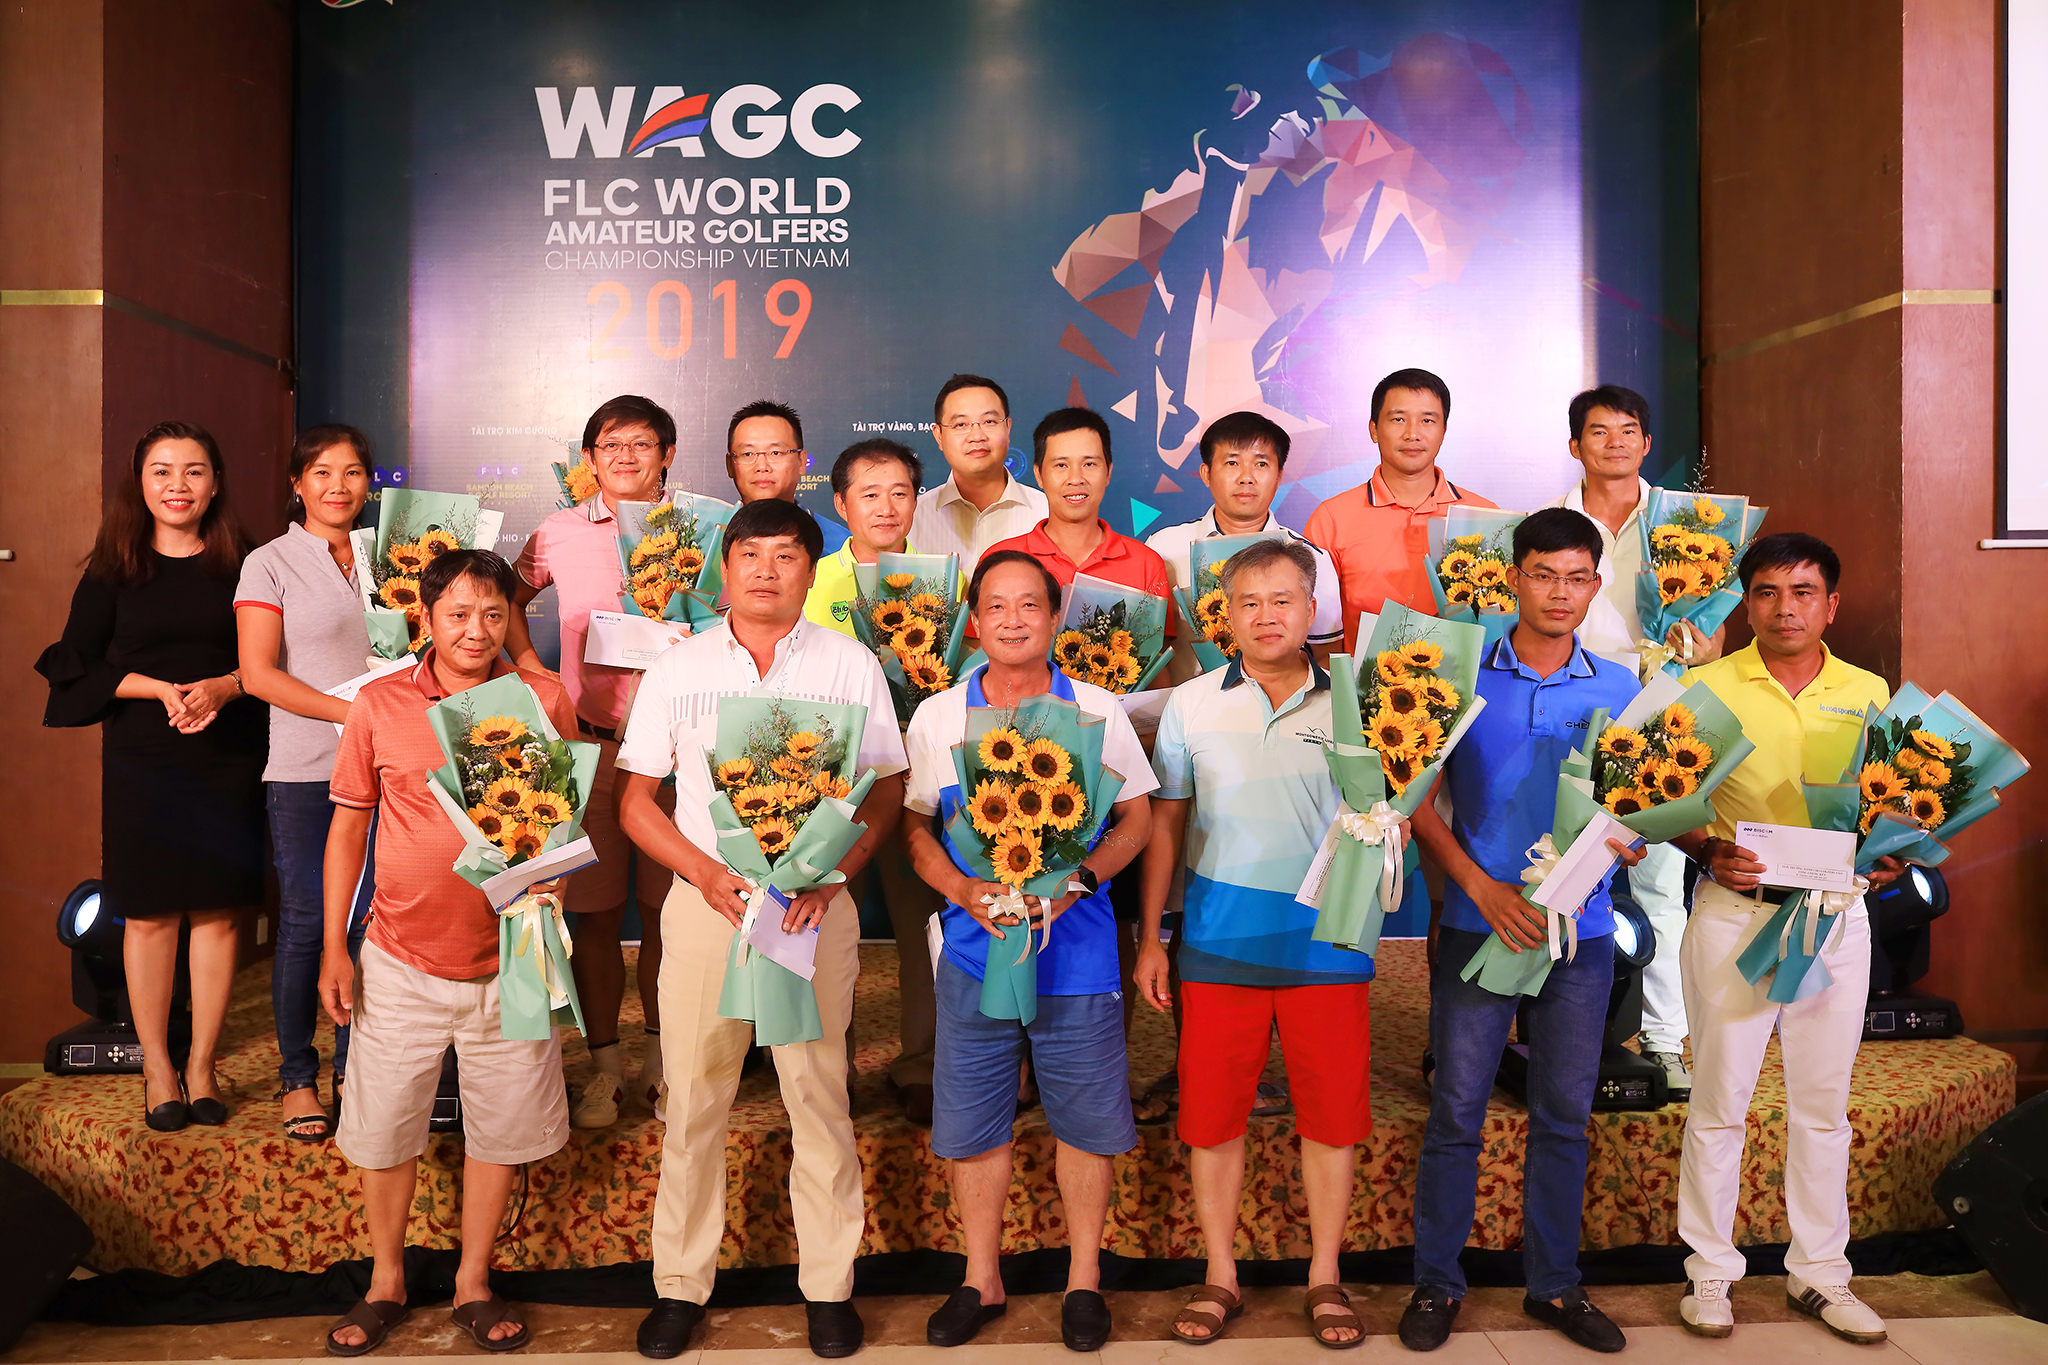 FLC WAGC Vietnam 2019 hẹn gặp các golfer xuất sắc 2 miền tại vòng chung kết